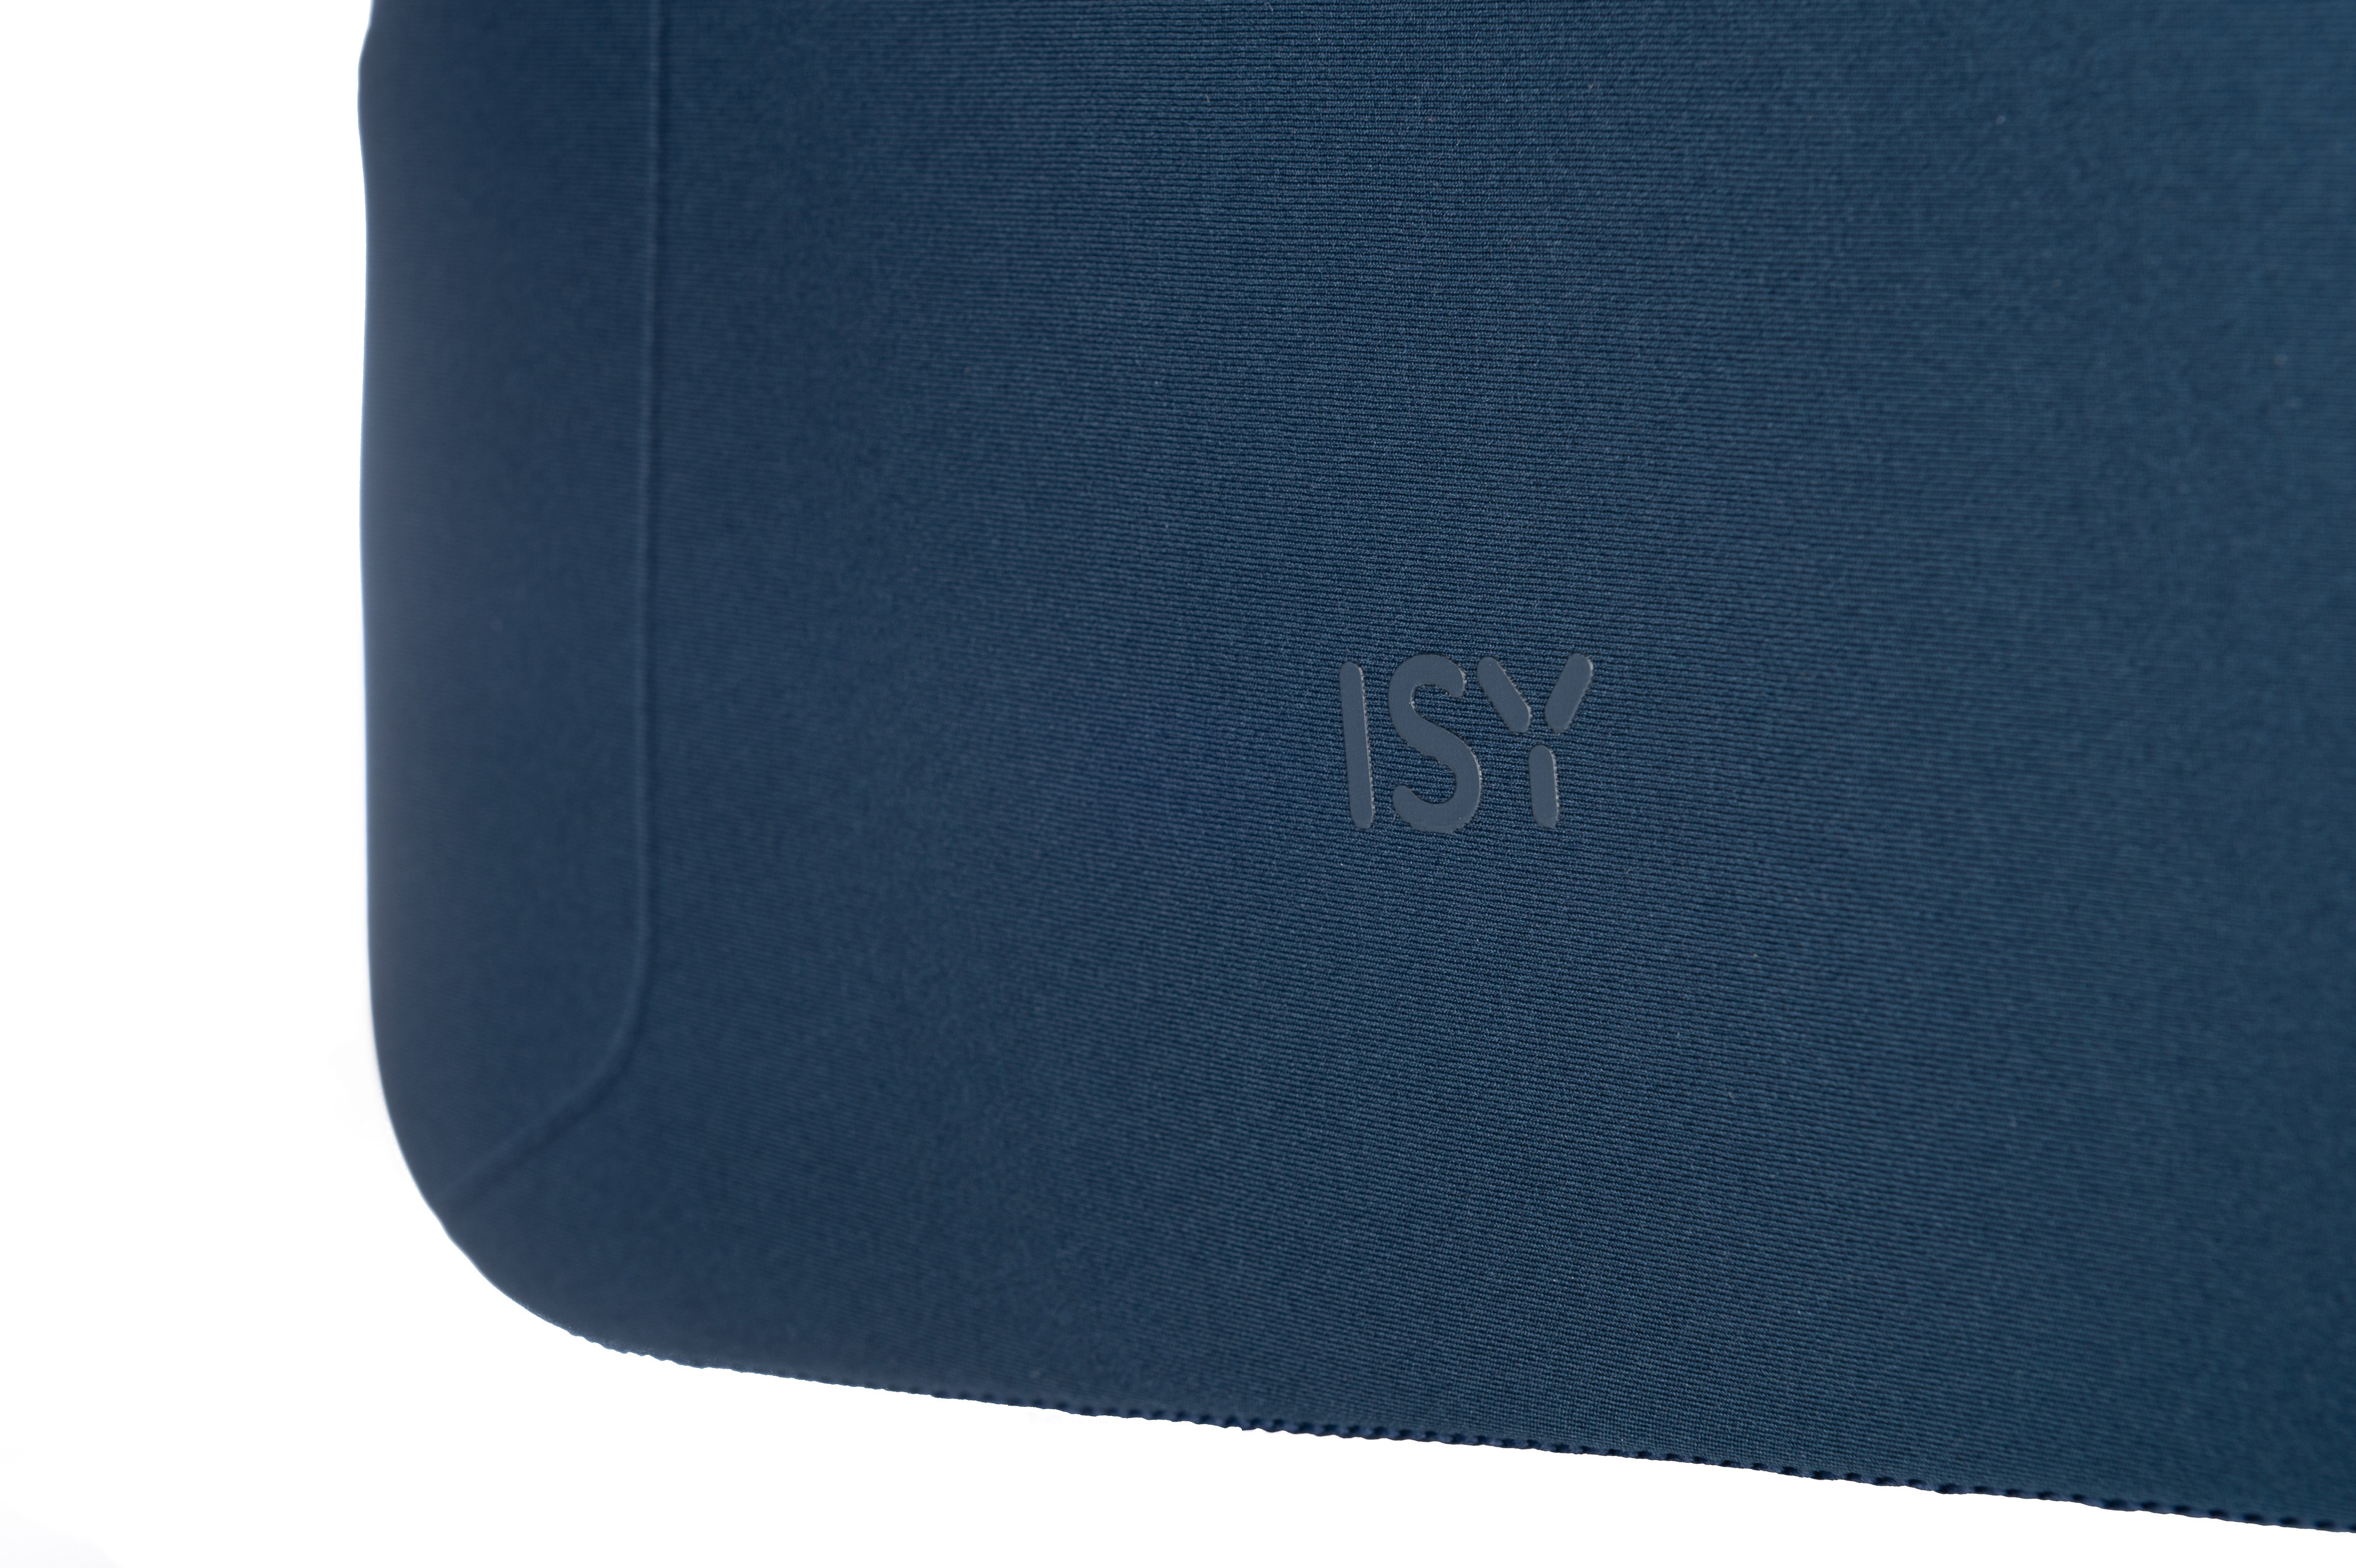 ISY INB-1560 Notebooktasche Sleeve für 100% Universal Polyester, Blau